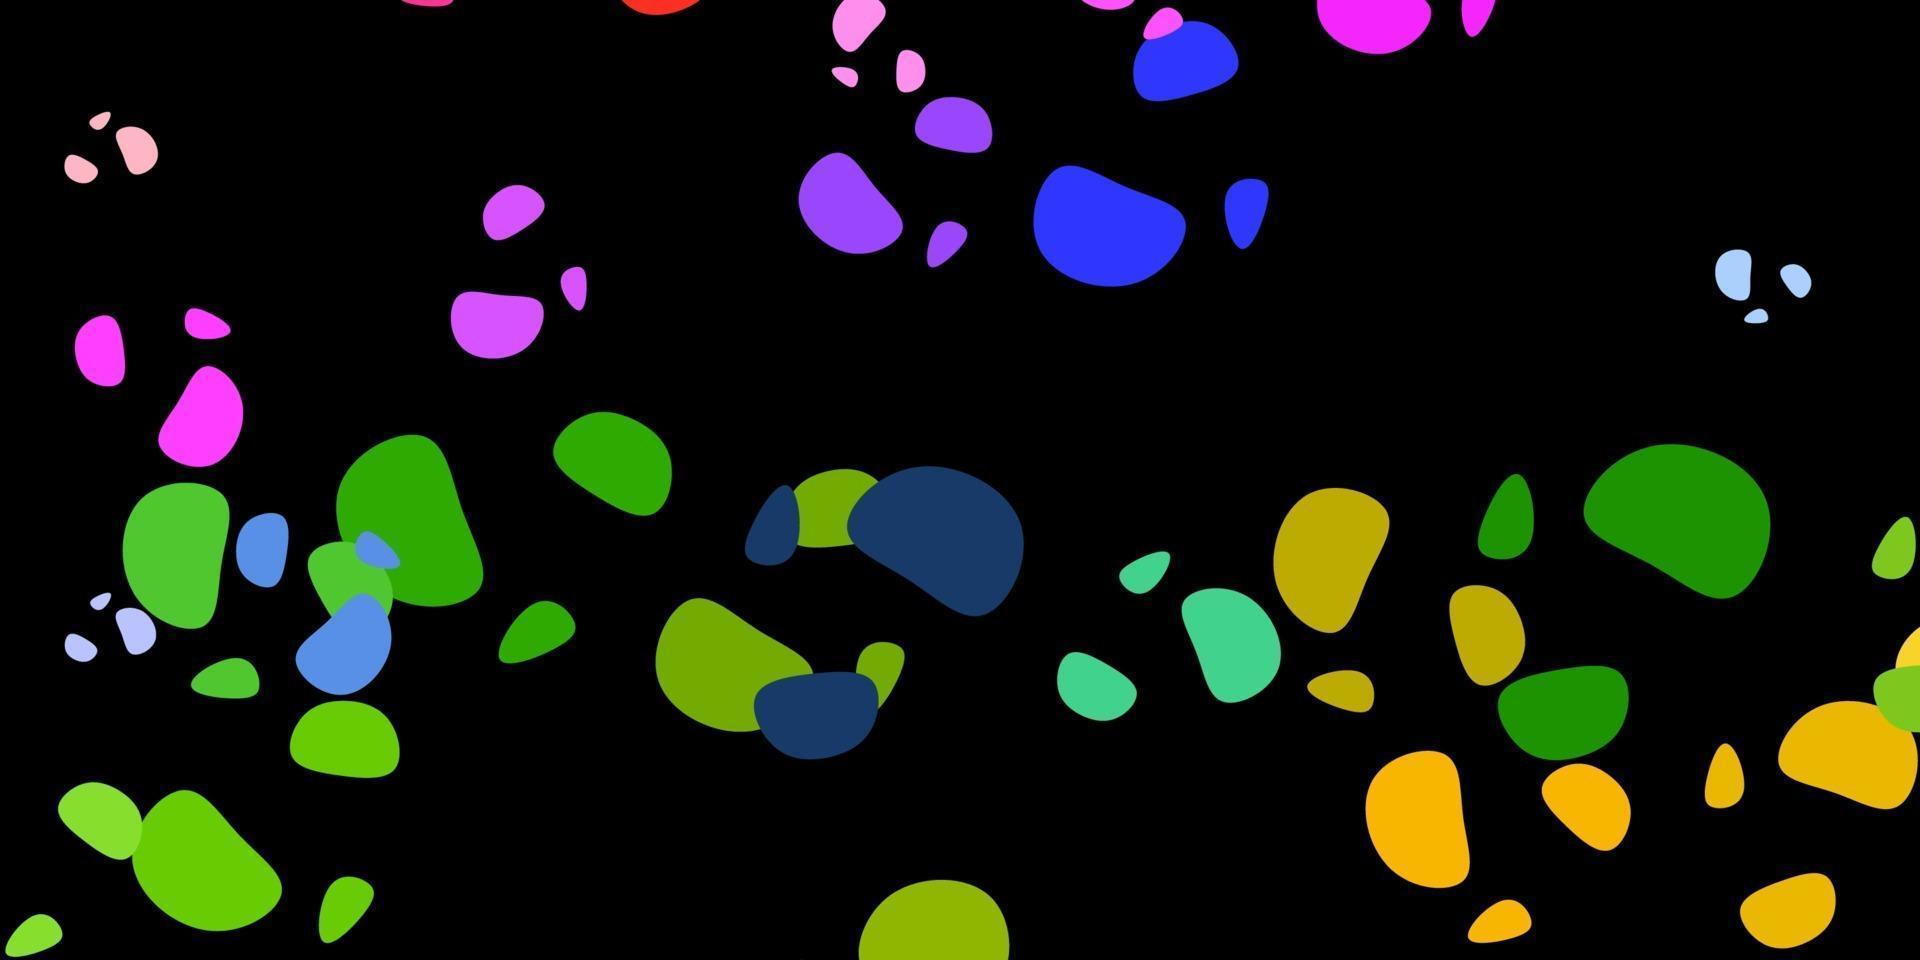 modelo de vetor multicolor escuro com formas abstratas.